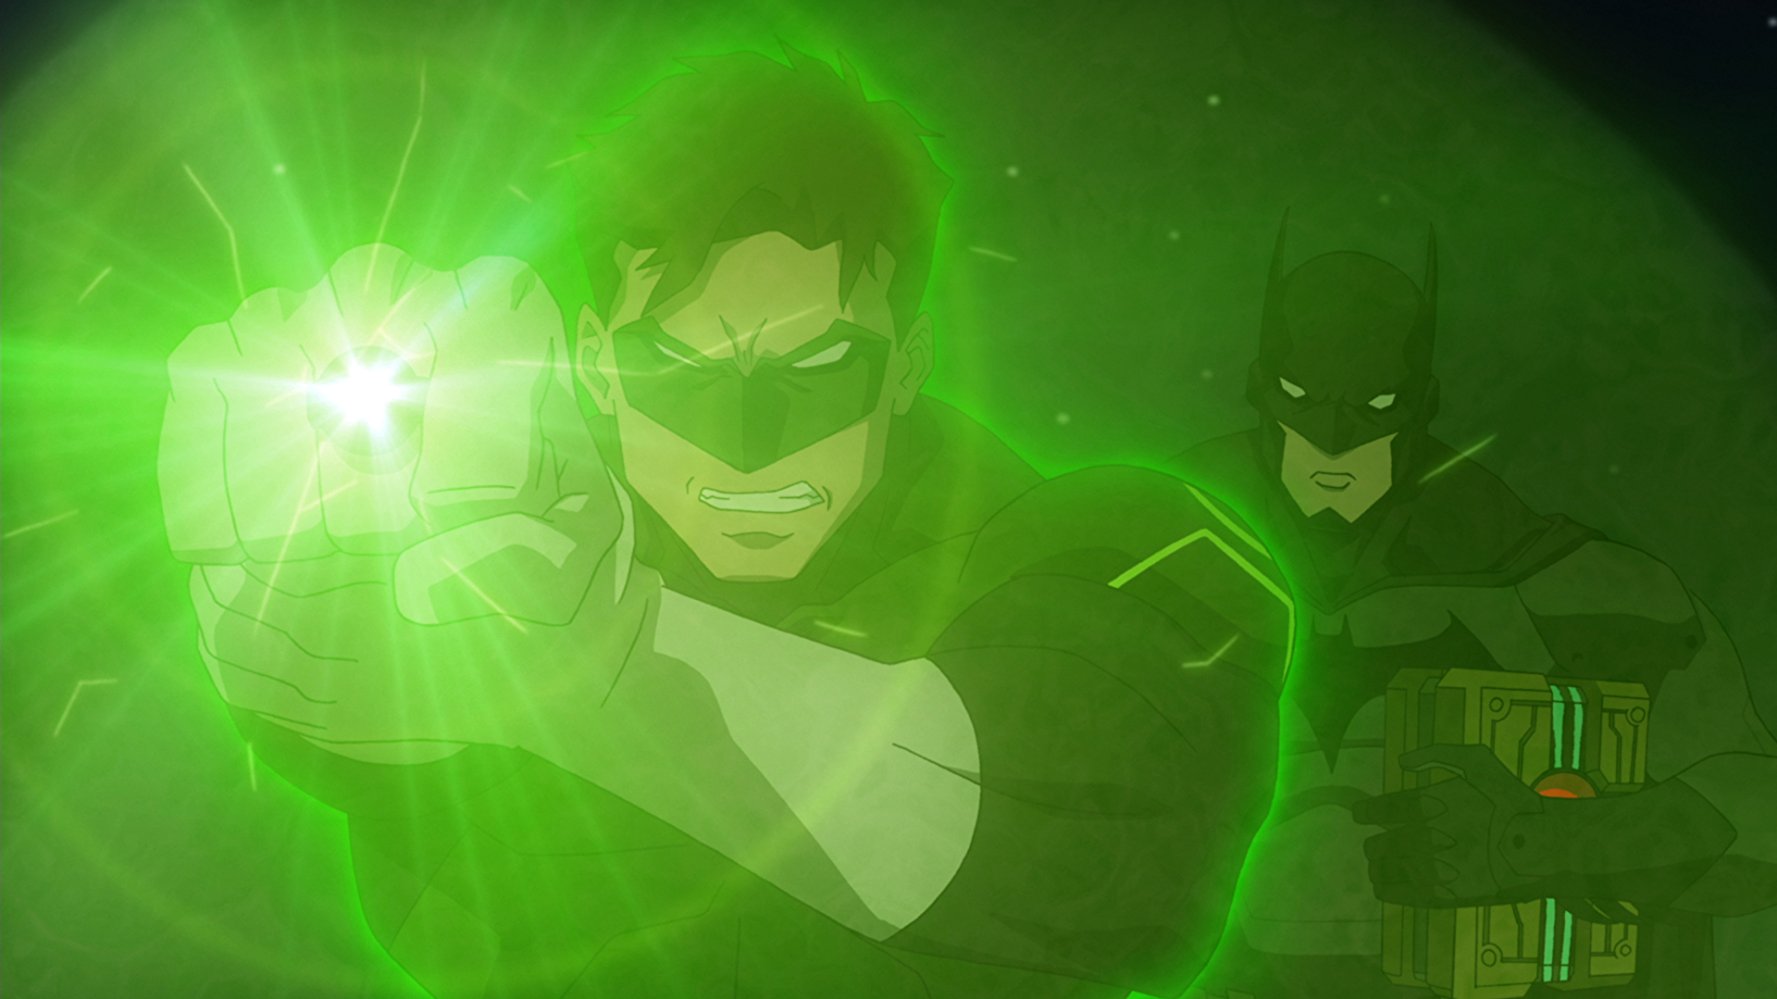 Green Lantern's Ring